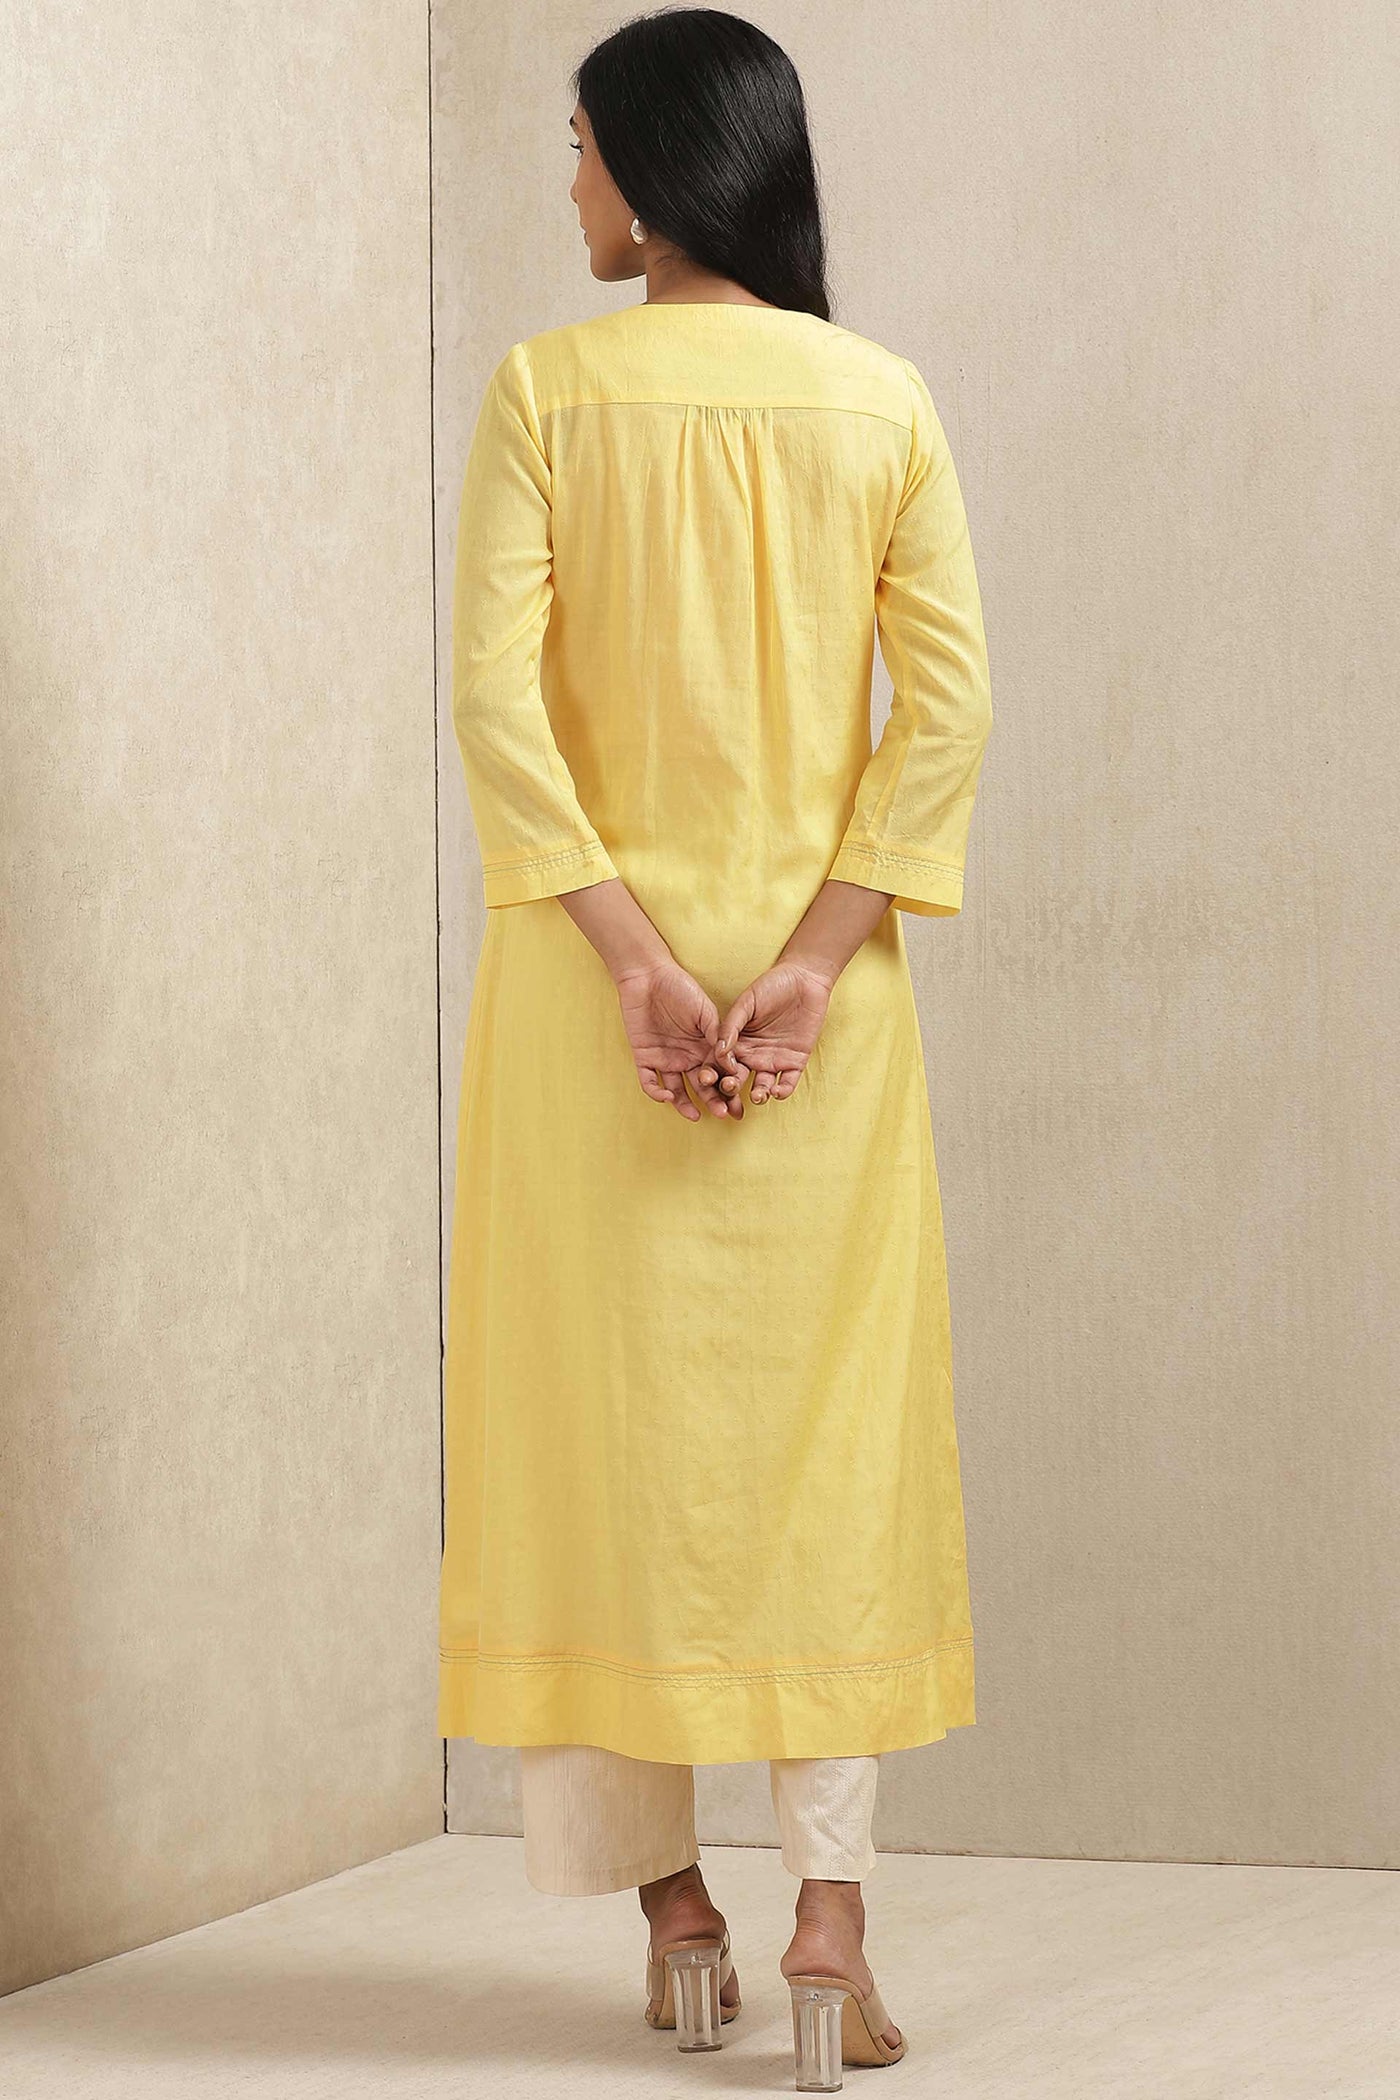 ritu kumar Yellow Embroidered Kurta online shopping melange singapore indian designer wear